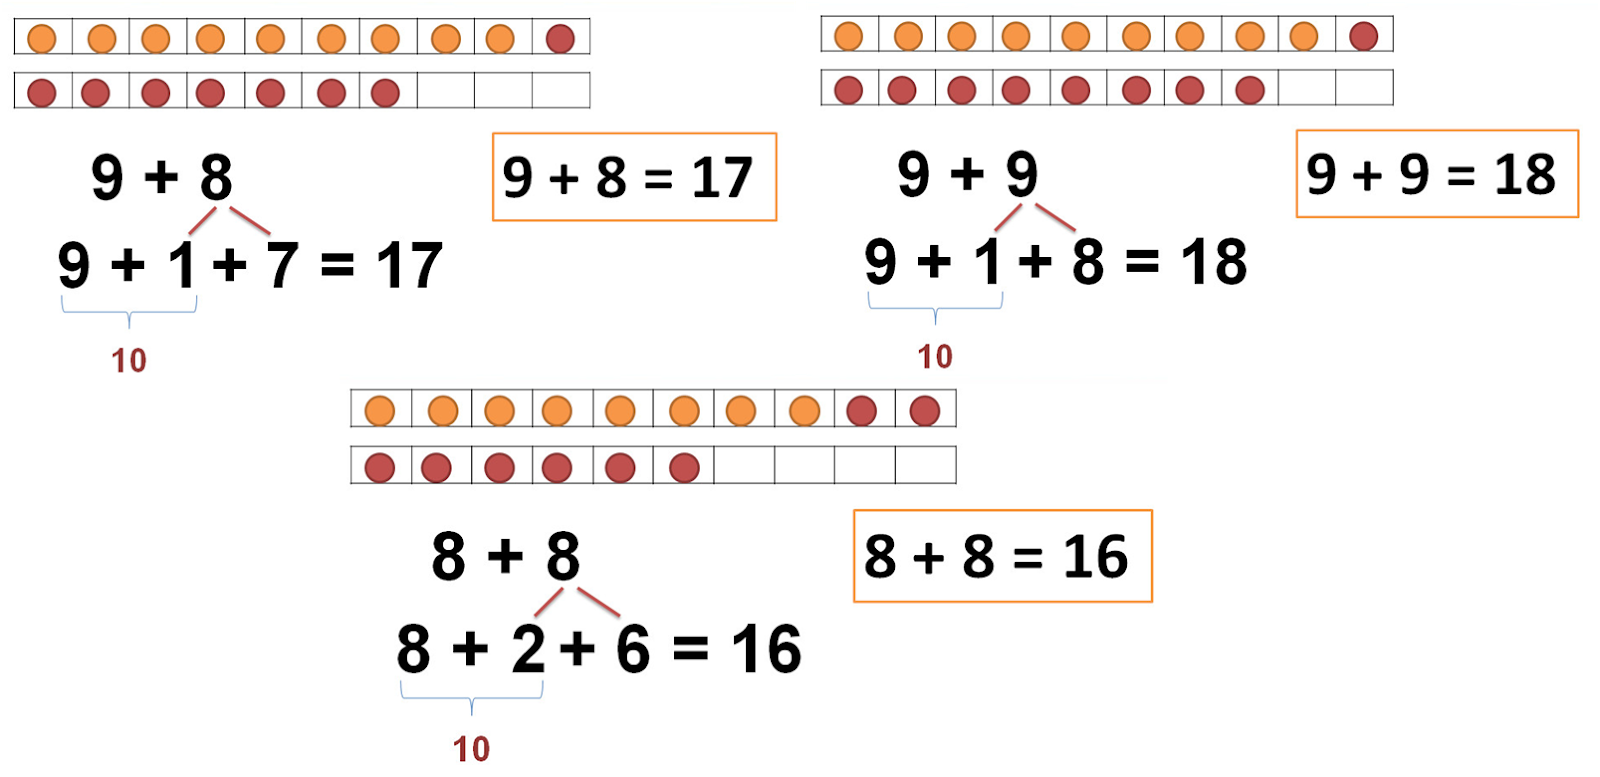 Таблица сложения однозначных чисел с переходом через десяток до 20. Сложение с переходом через десяток. Сложение однозначных чисел. Сложение однозначных чисел с переходом через десяток.